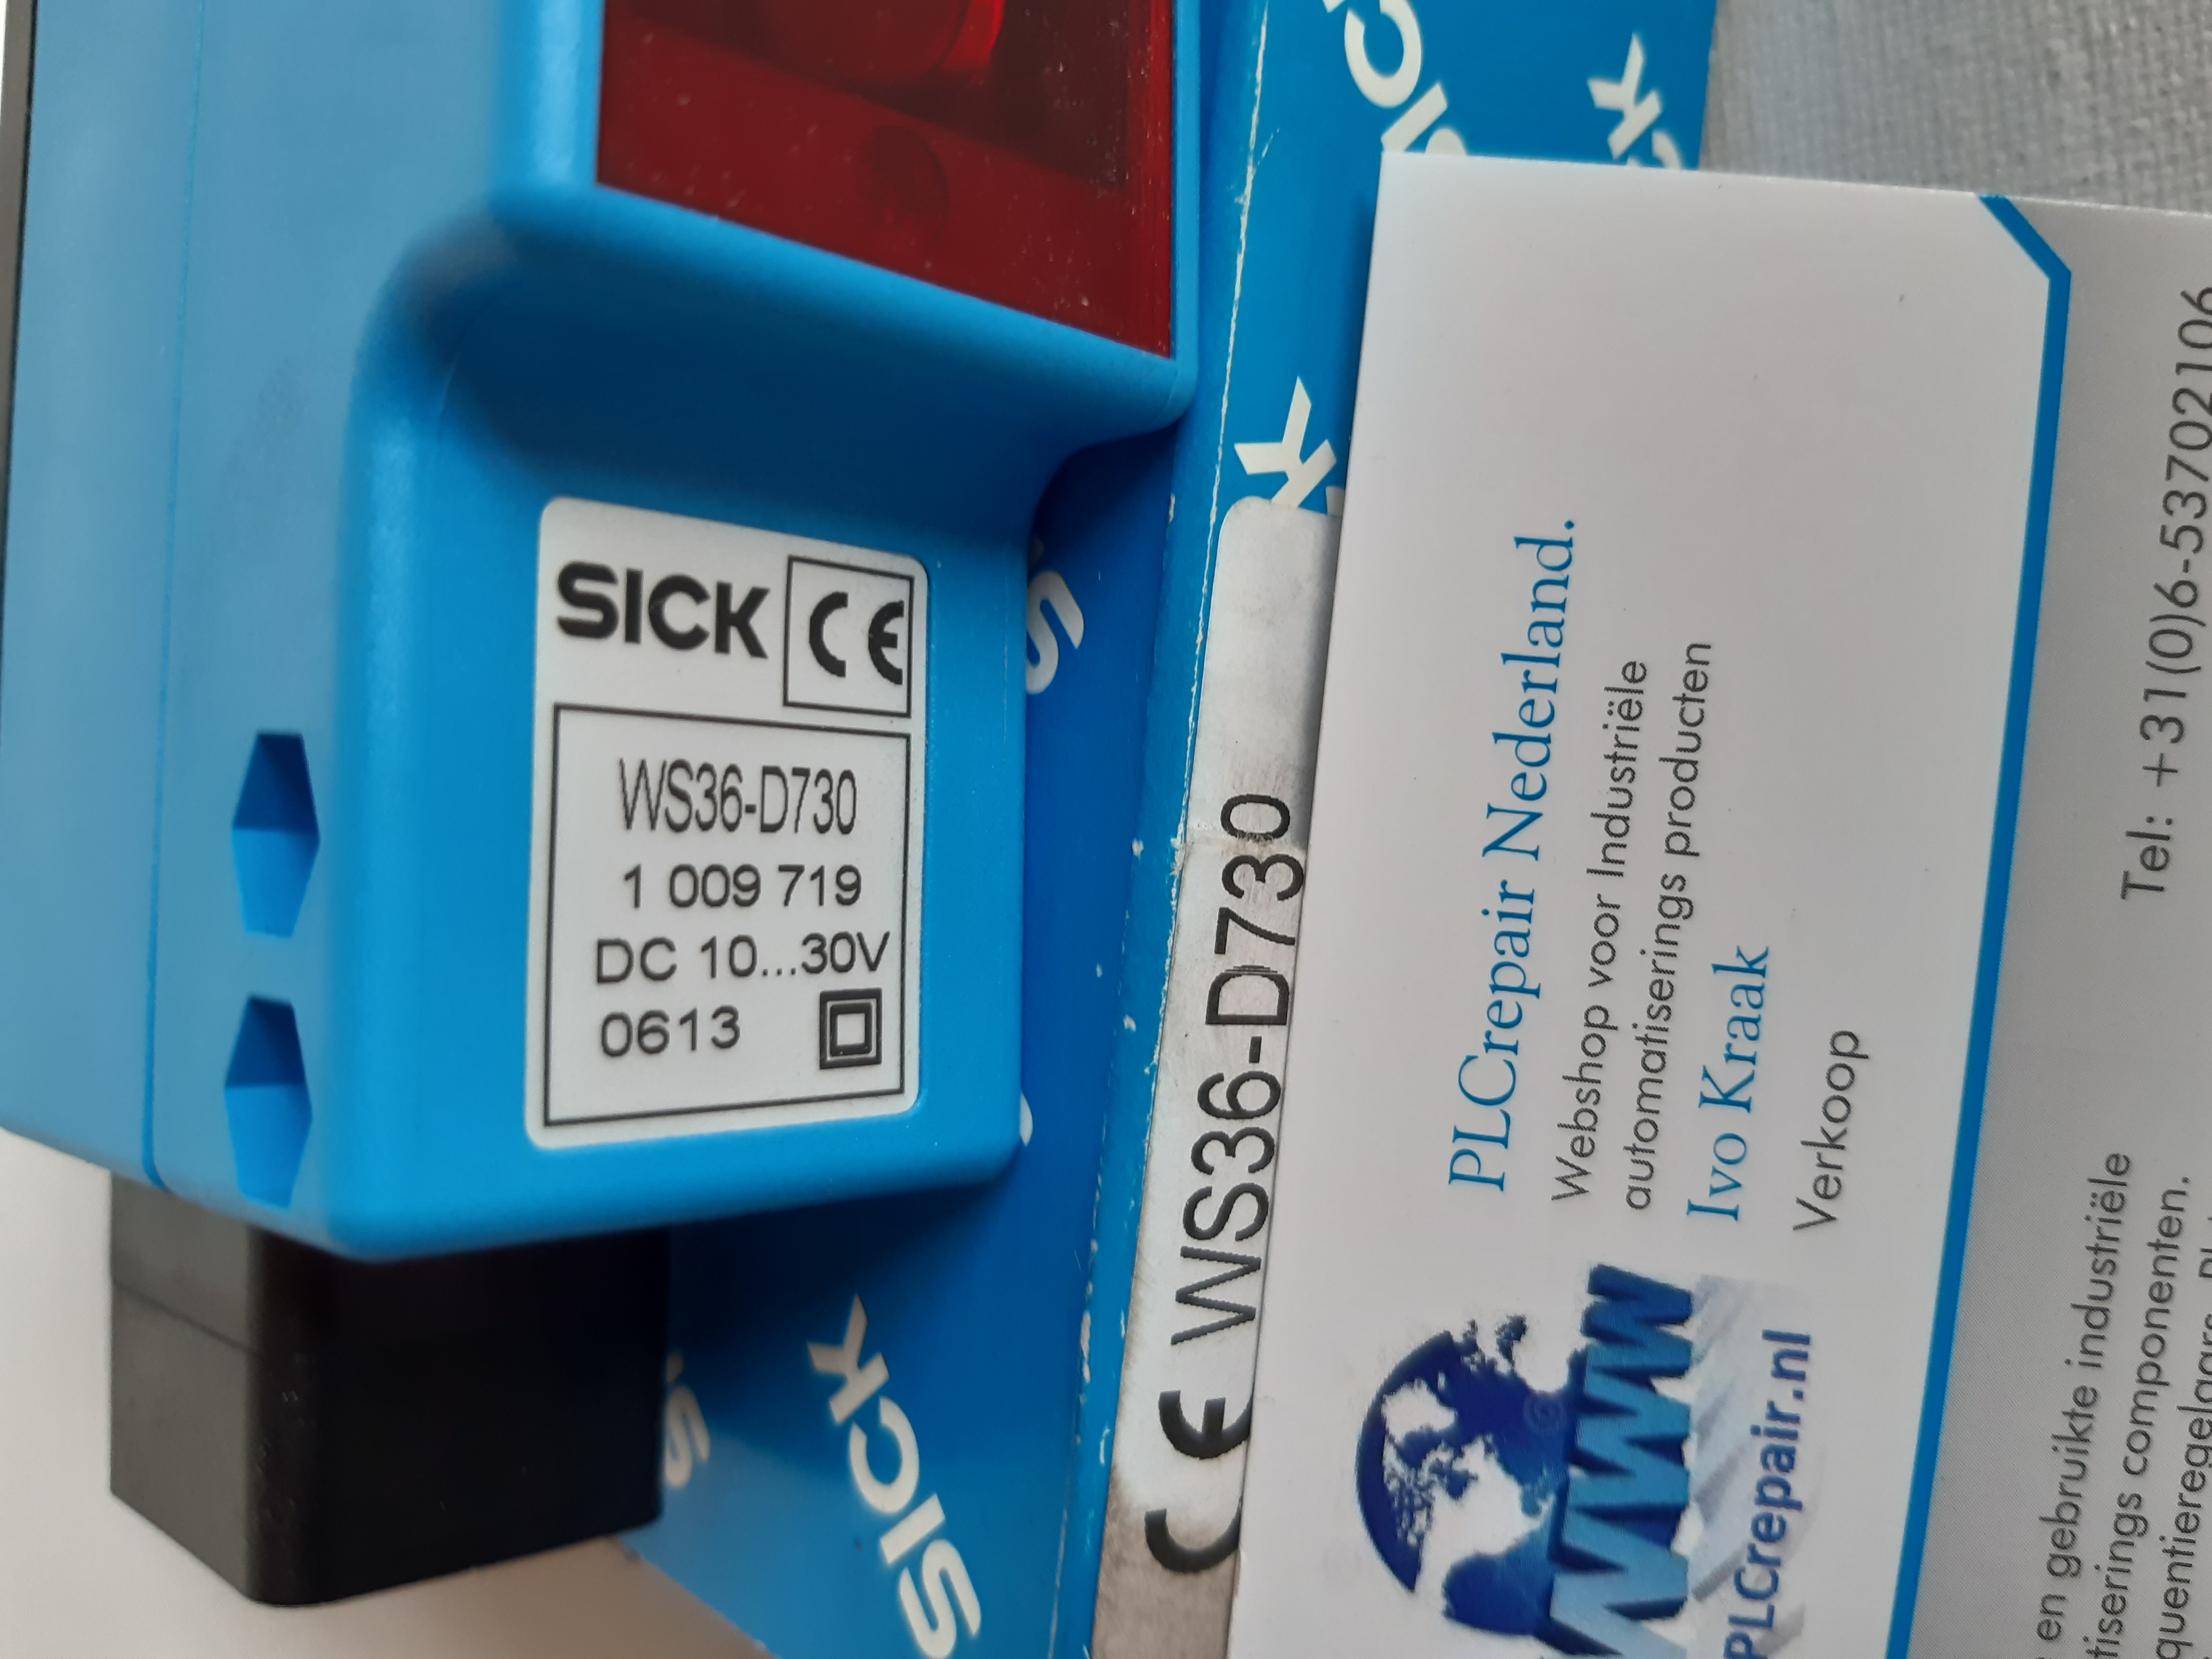 WS36-D730 Sick sensor